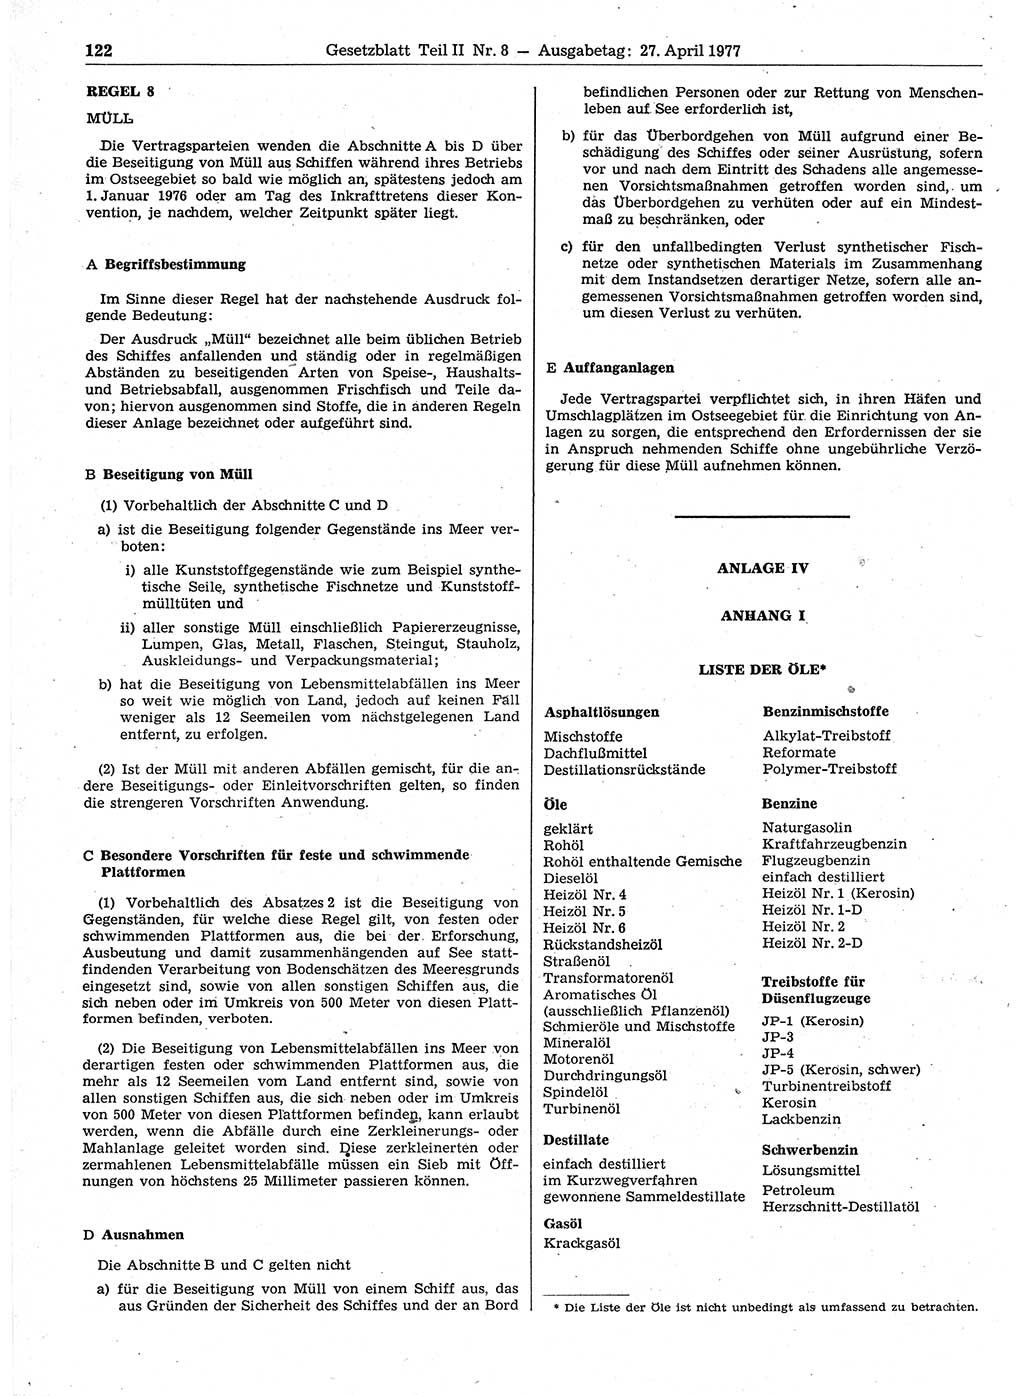 Gesetzblatt (GBl.) der Deutschen Demokratischen Republik (DDR) Teil ⅠⅠ 1977, Seite 122 (GBl. DDR ⅠⅠ 1977, S. 122)